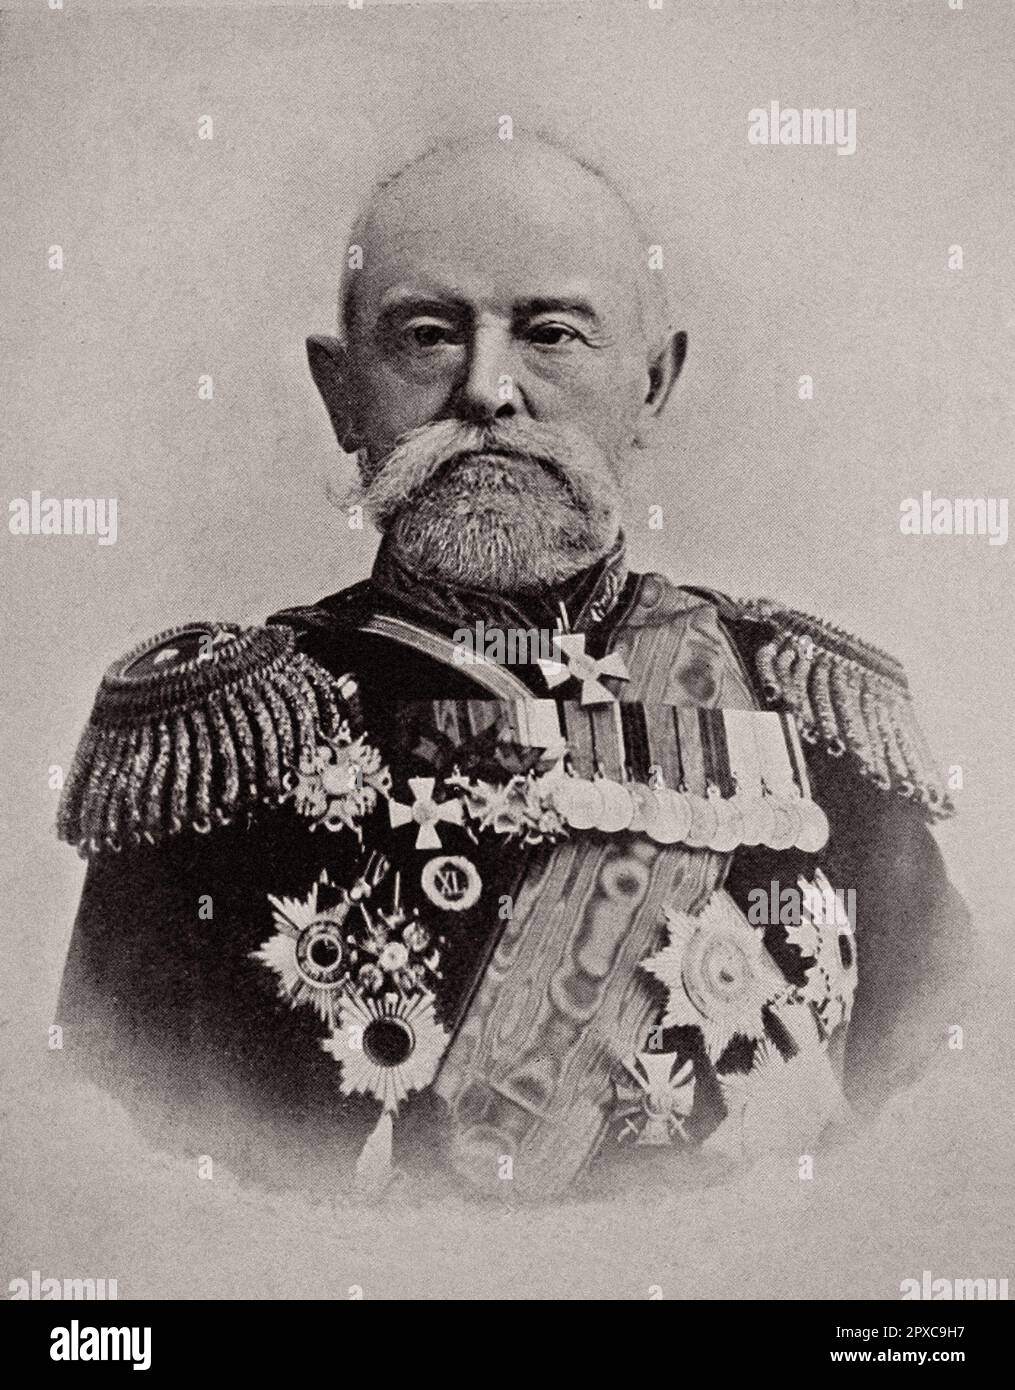 General Linievitch. Nikolai Petrovich Linevich (1839-1908) fue un oficial militar de carrera, general de infantería (1903) y general adjunto en el Ejército Imperial Ruso en el Lejano Oriente durante la última parte de la Guerra Ruso-Japonesa. Foto de stock